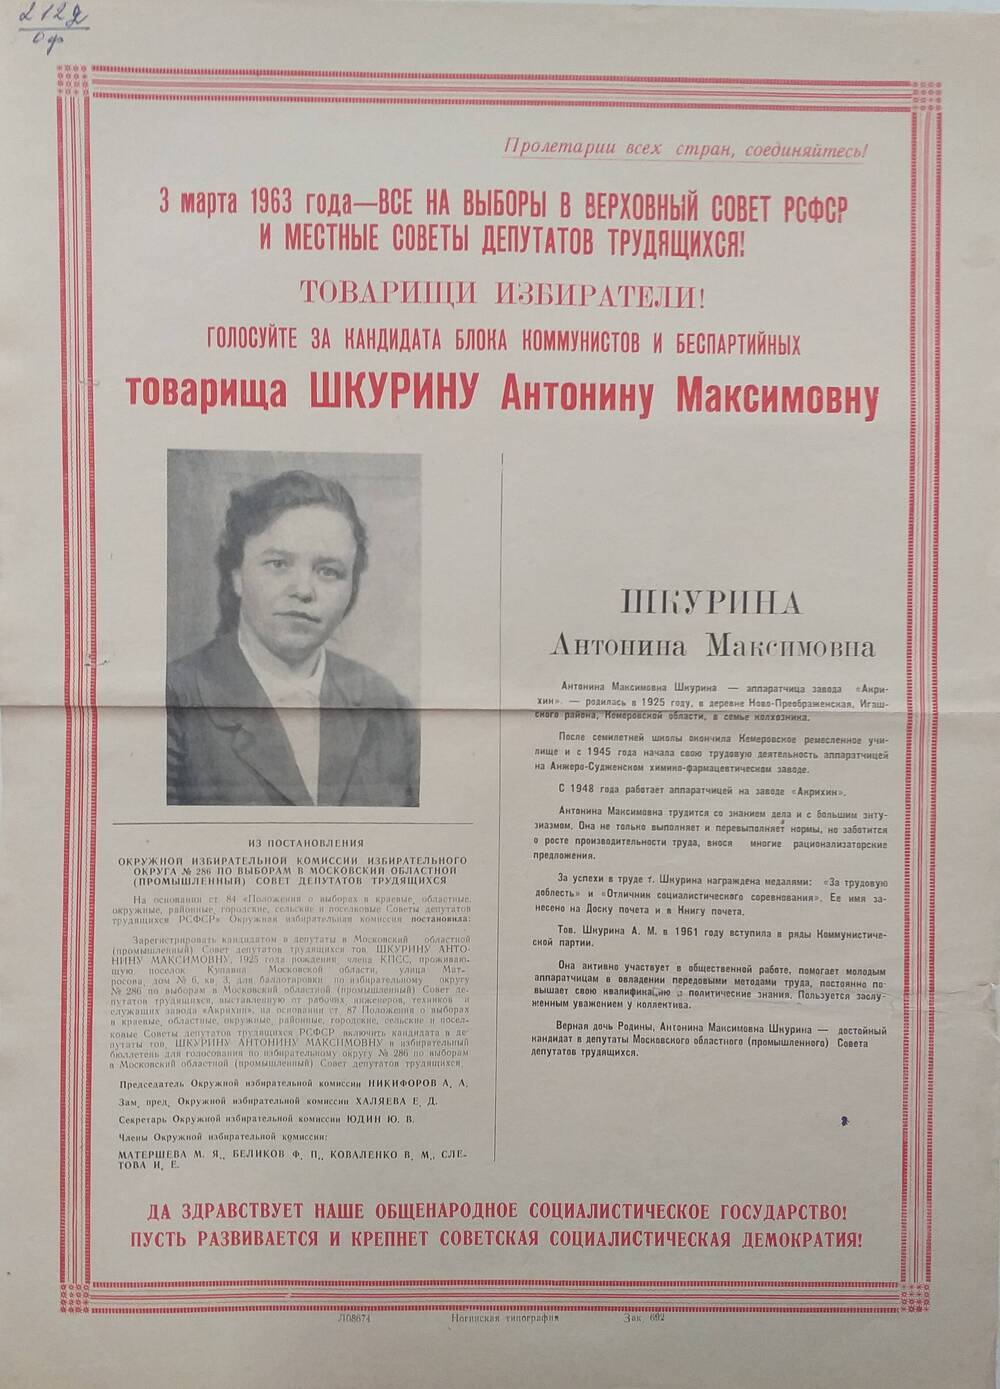 Плакат Призыв к голосованию на выборах 3 марта 1963 года за товарища Шкурину Антонину Максимовну - аппаратчицу завода Акрихин, 1963 год.